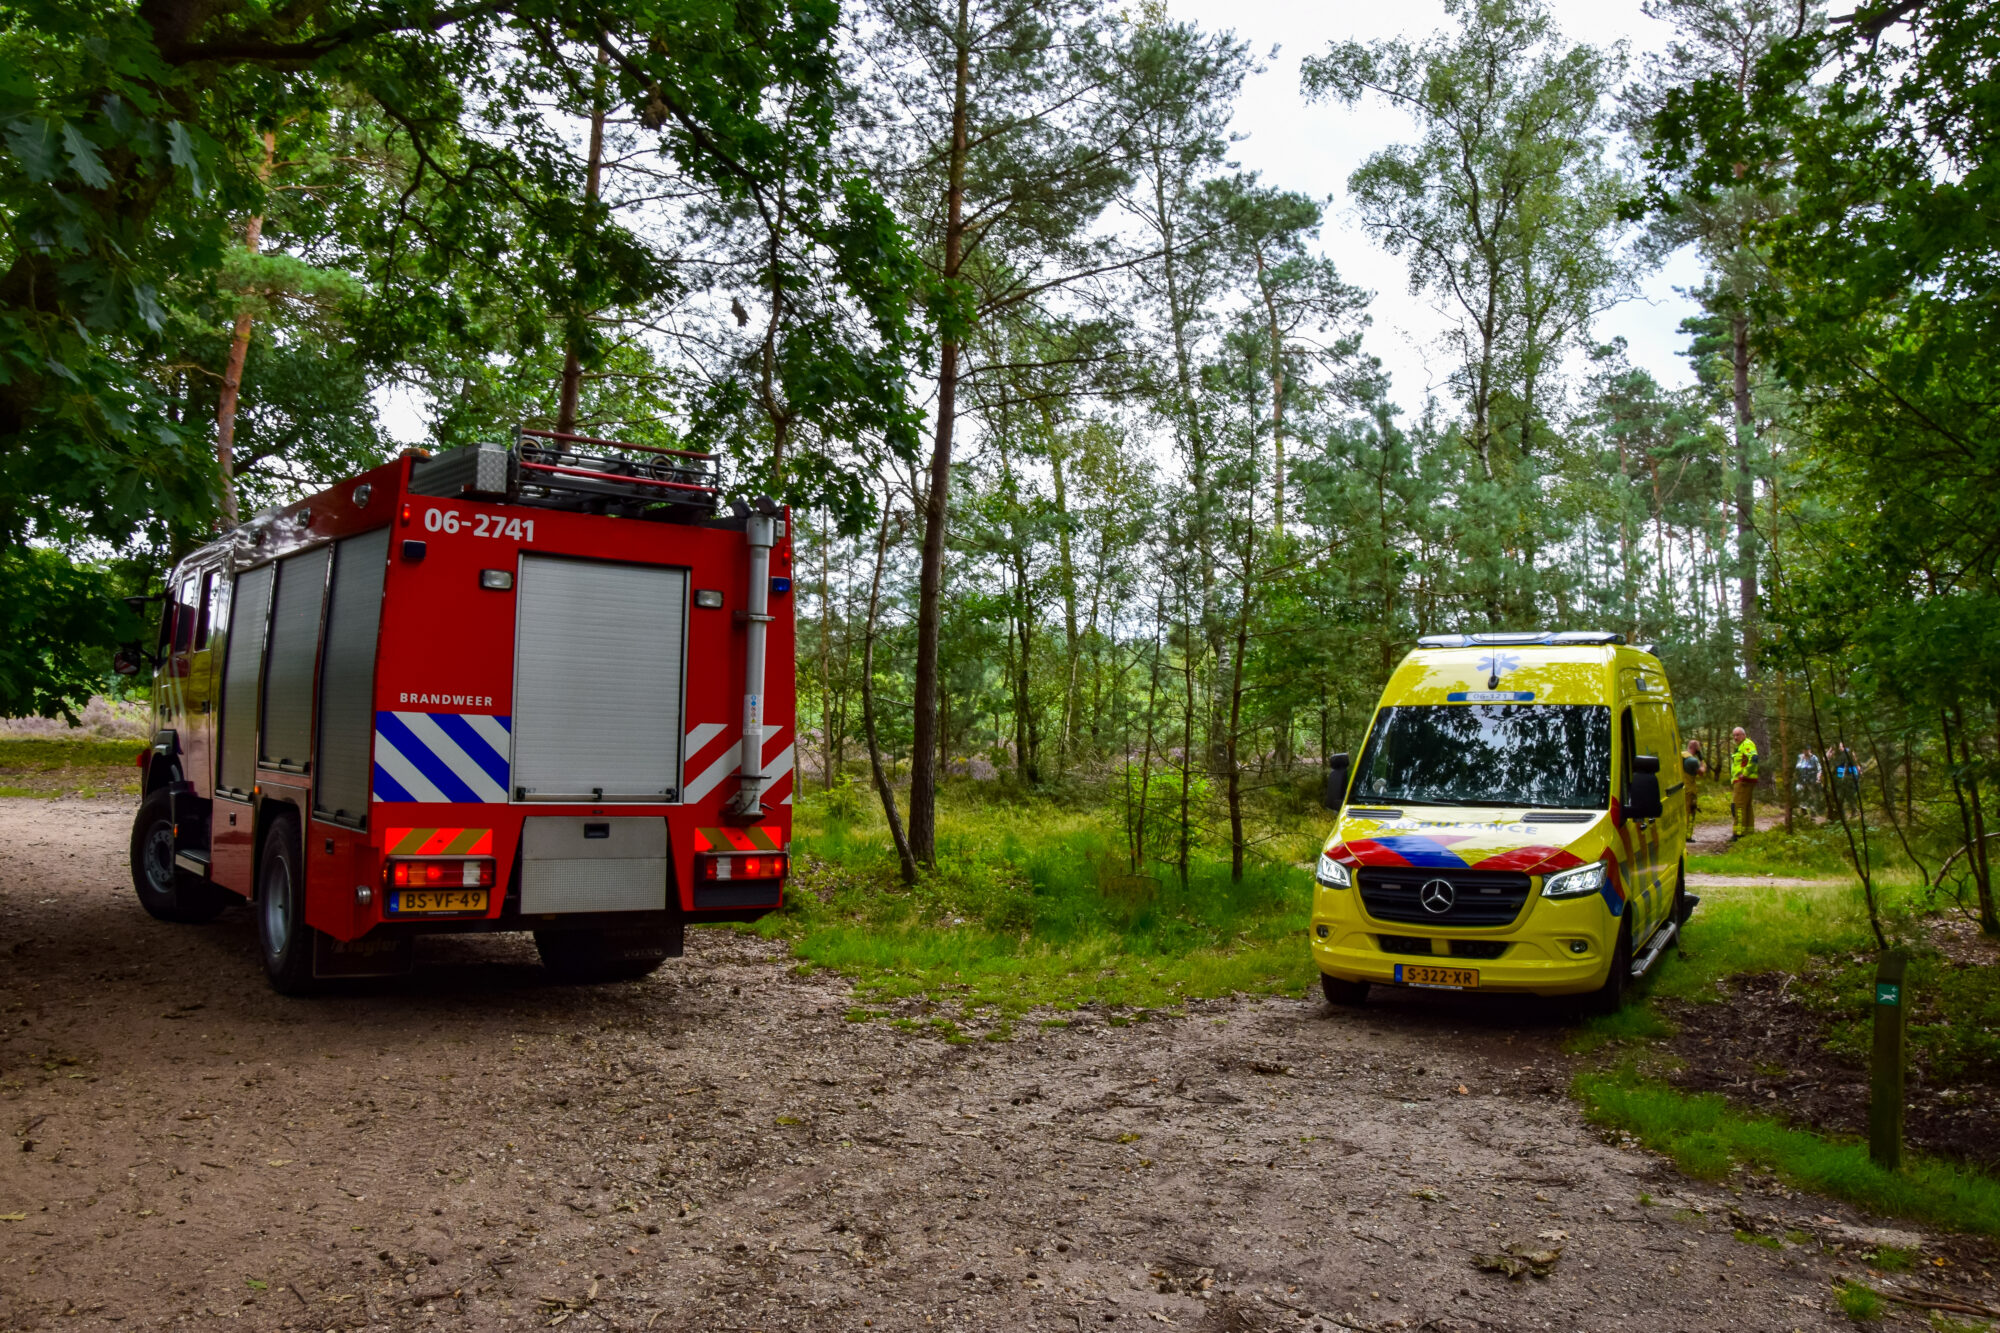 Vrouw gewond tijdens wandeling in bos bij Ugchelen, brandweer schiet te hulp